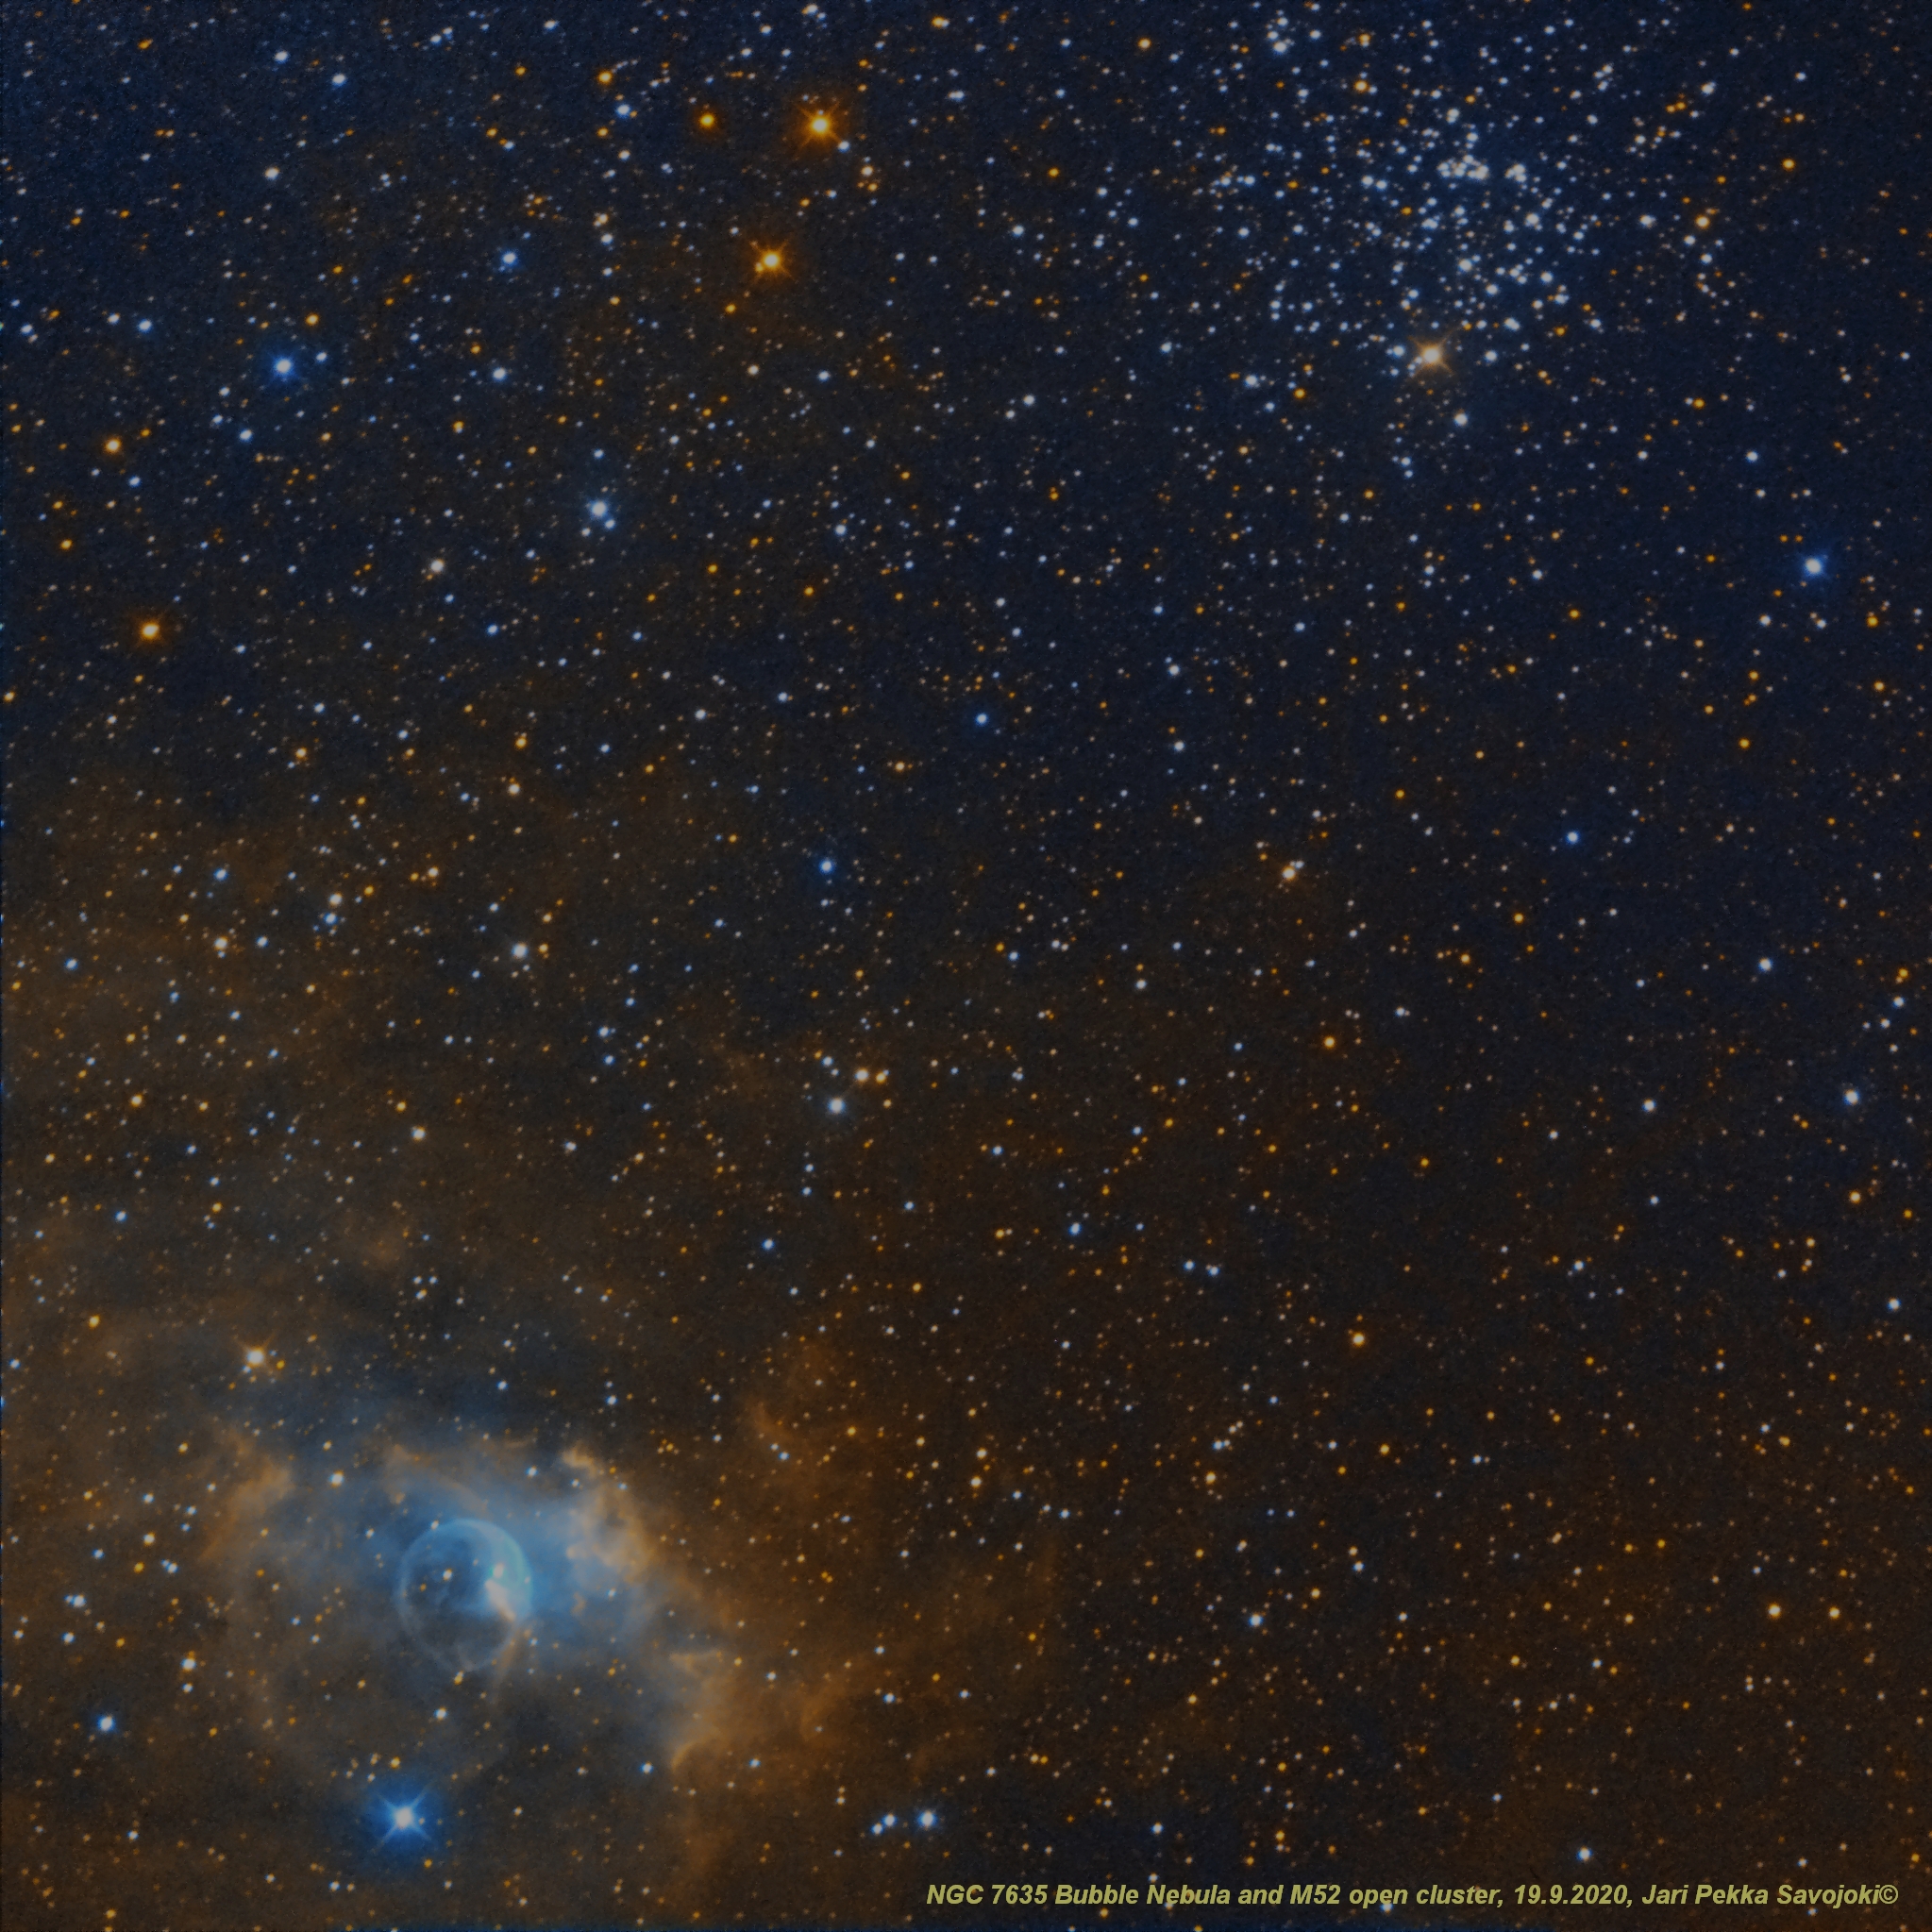 Bubble - M52